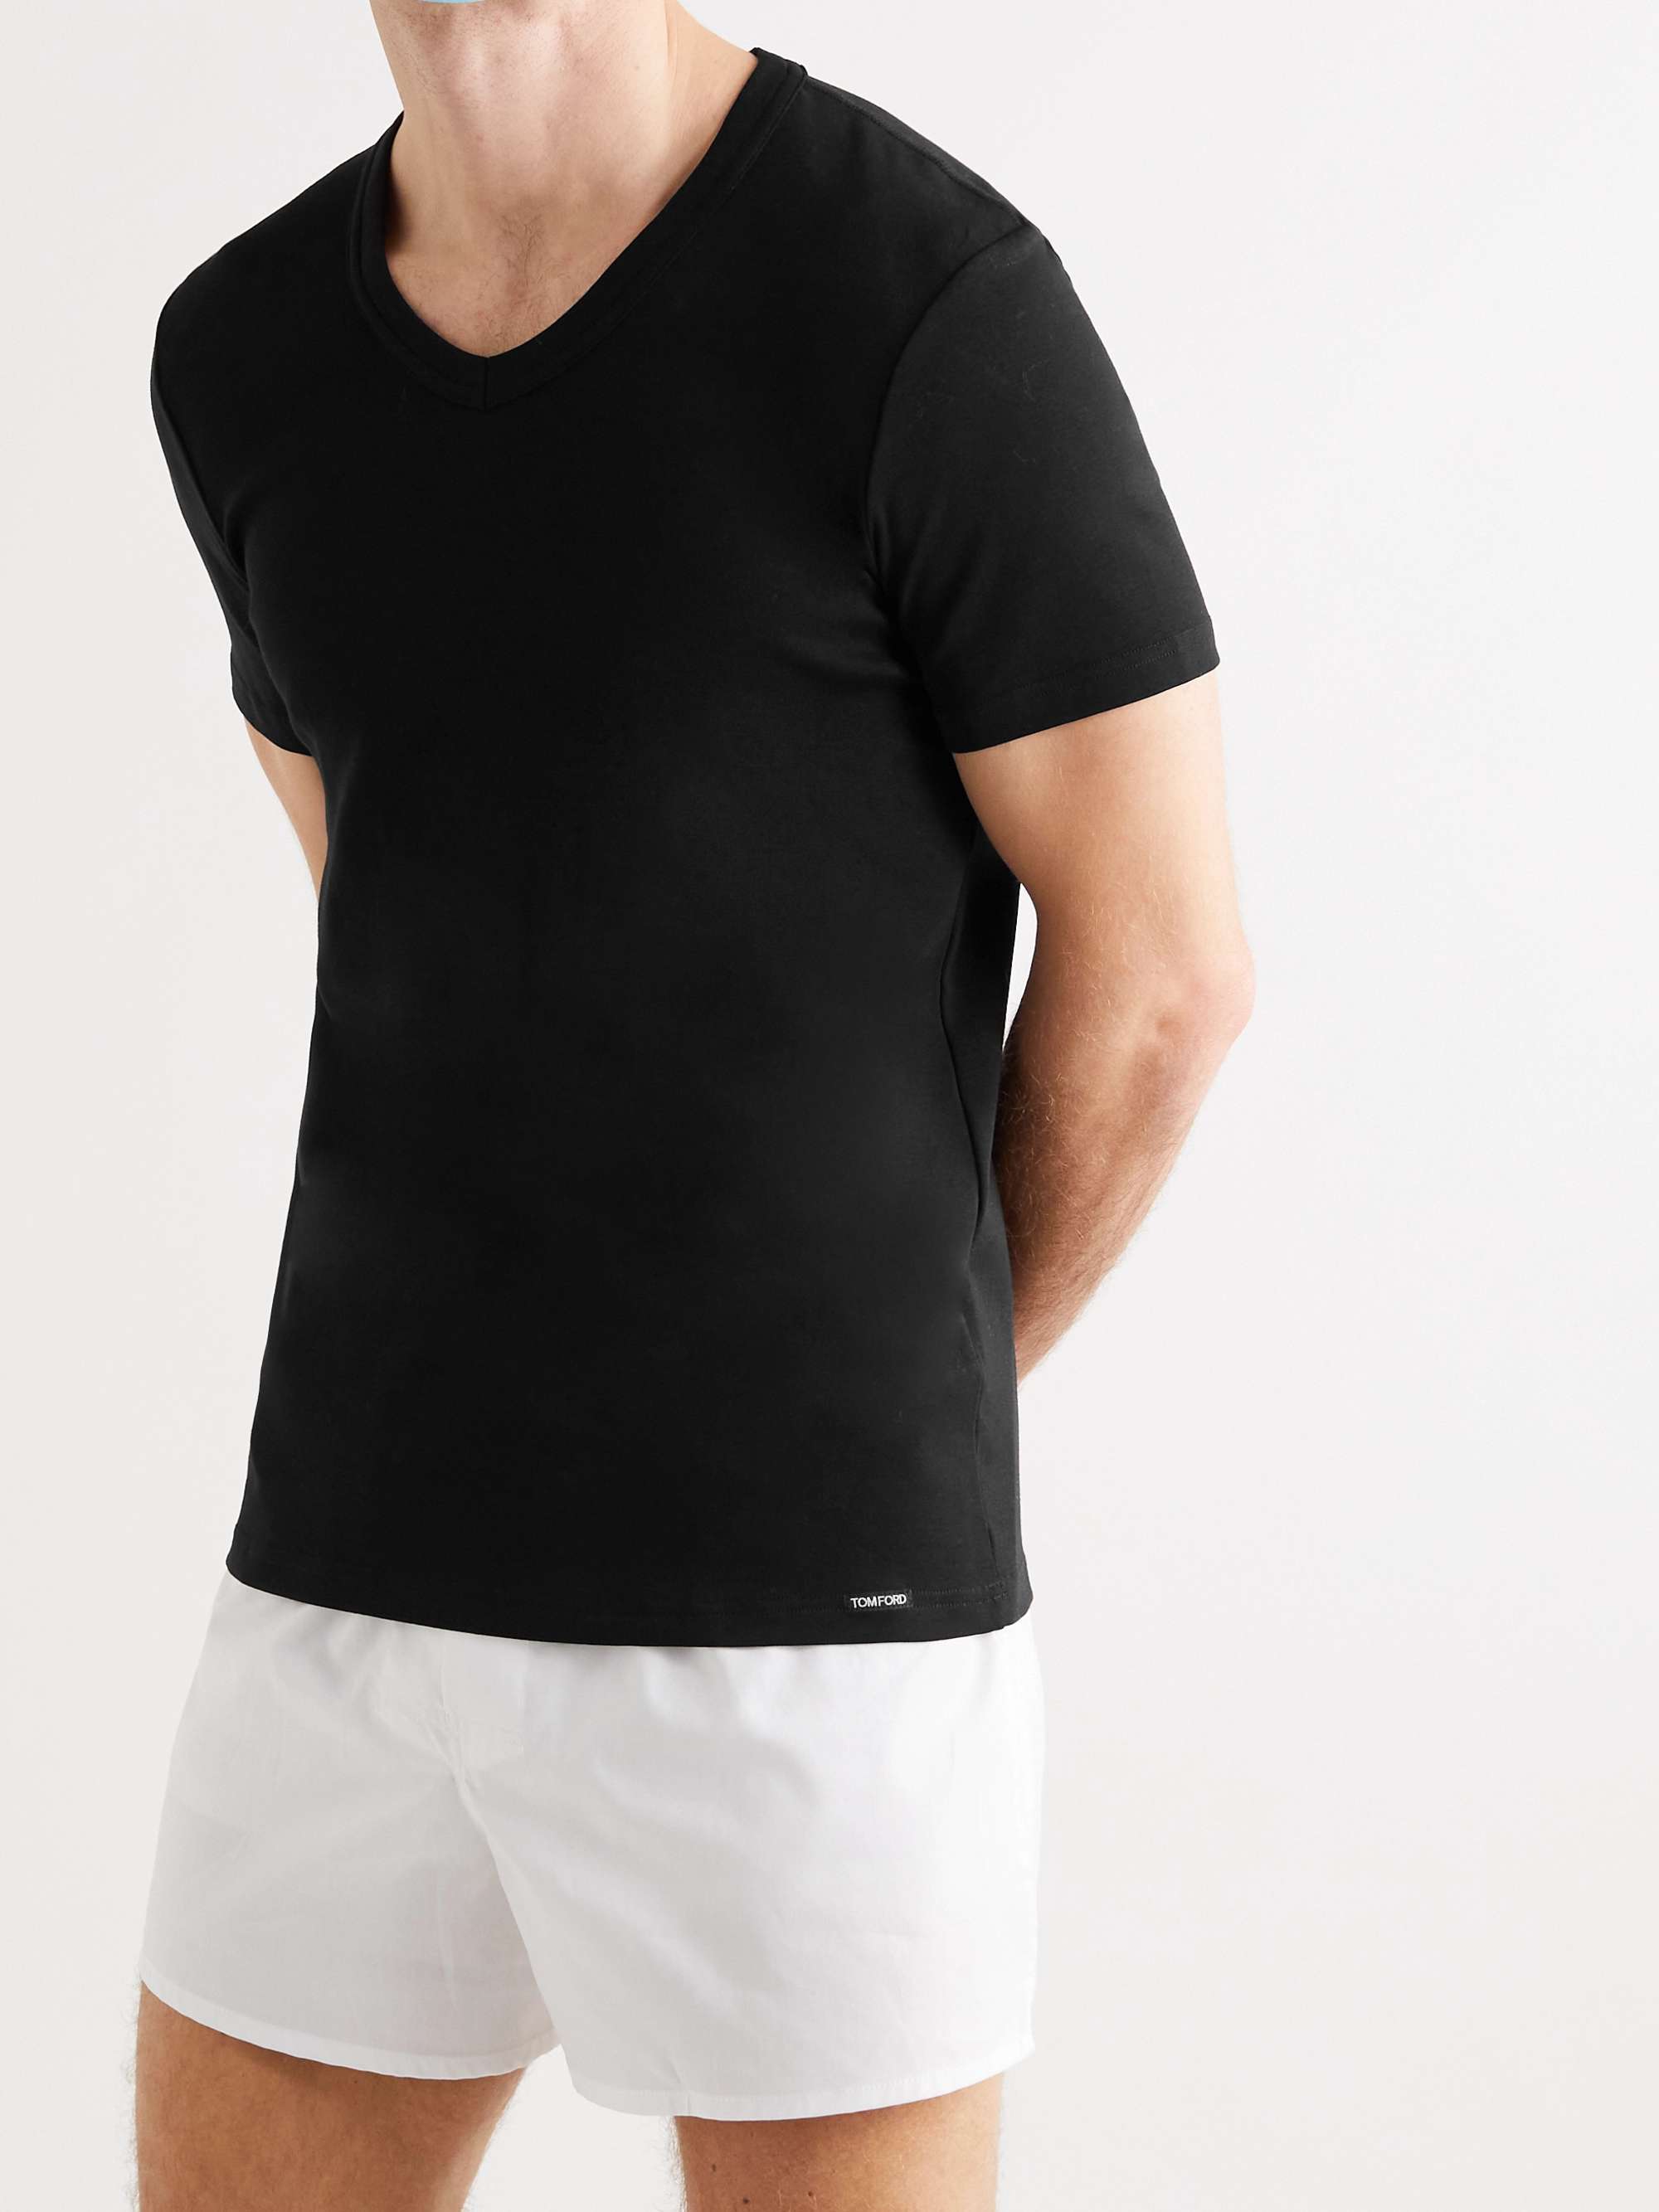 Rejsende købmand Det fortvivlelse TOM FORD Slim-Fit Stretch-Cotton Jersey T-Shirt for Men | MR PORTER